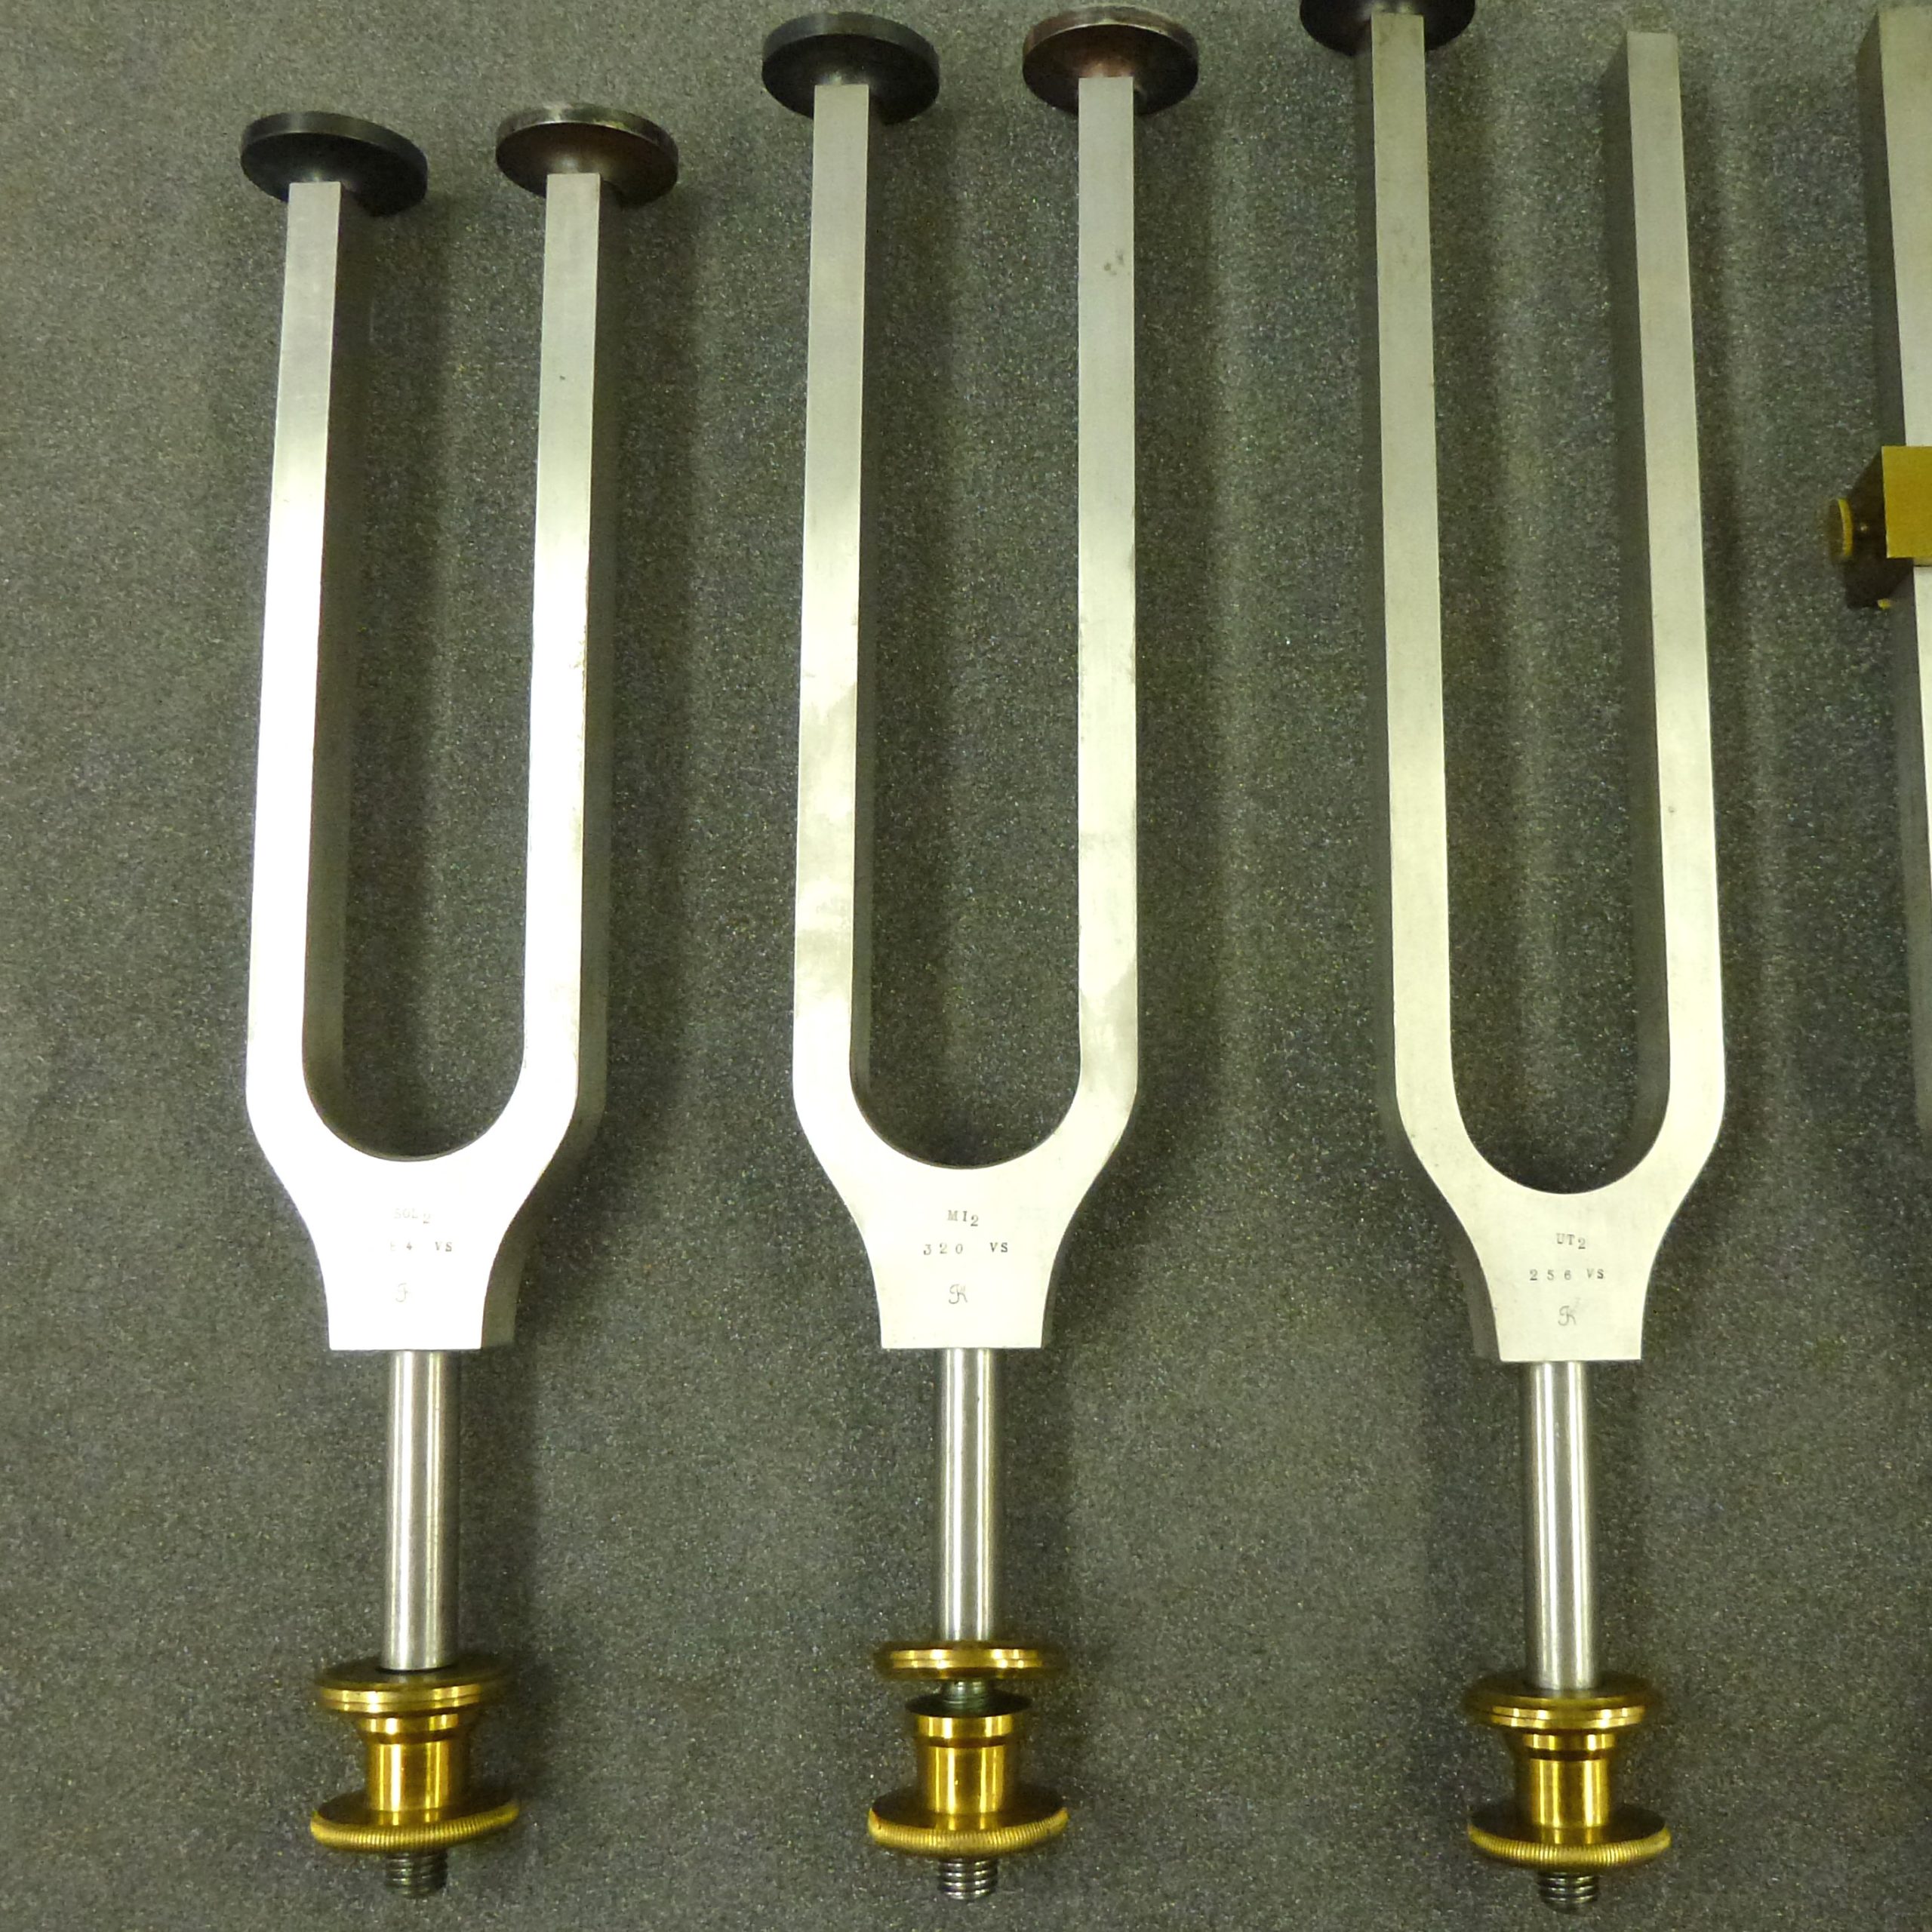 Tuning fork by Dr. R. König: MI₂